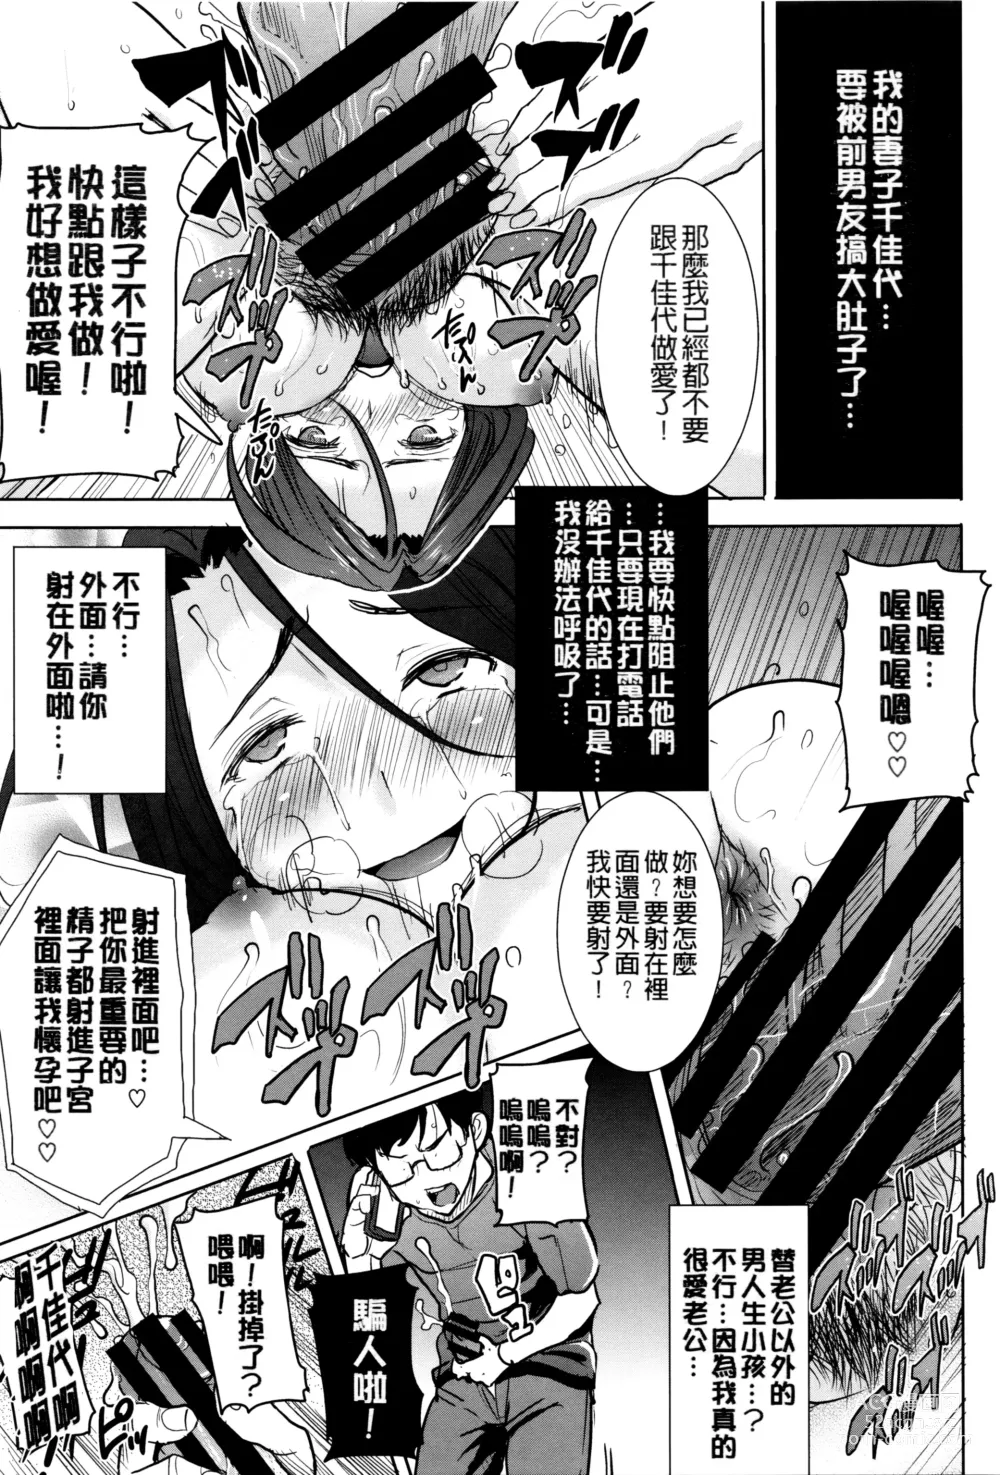 Page 22 of manga Kawaii Namaiki Tsuma Chikayo...to Motokare 1+2